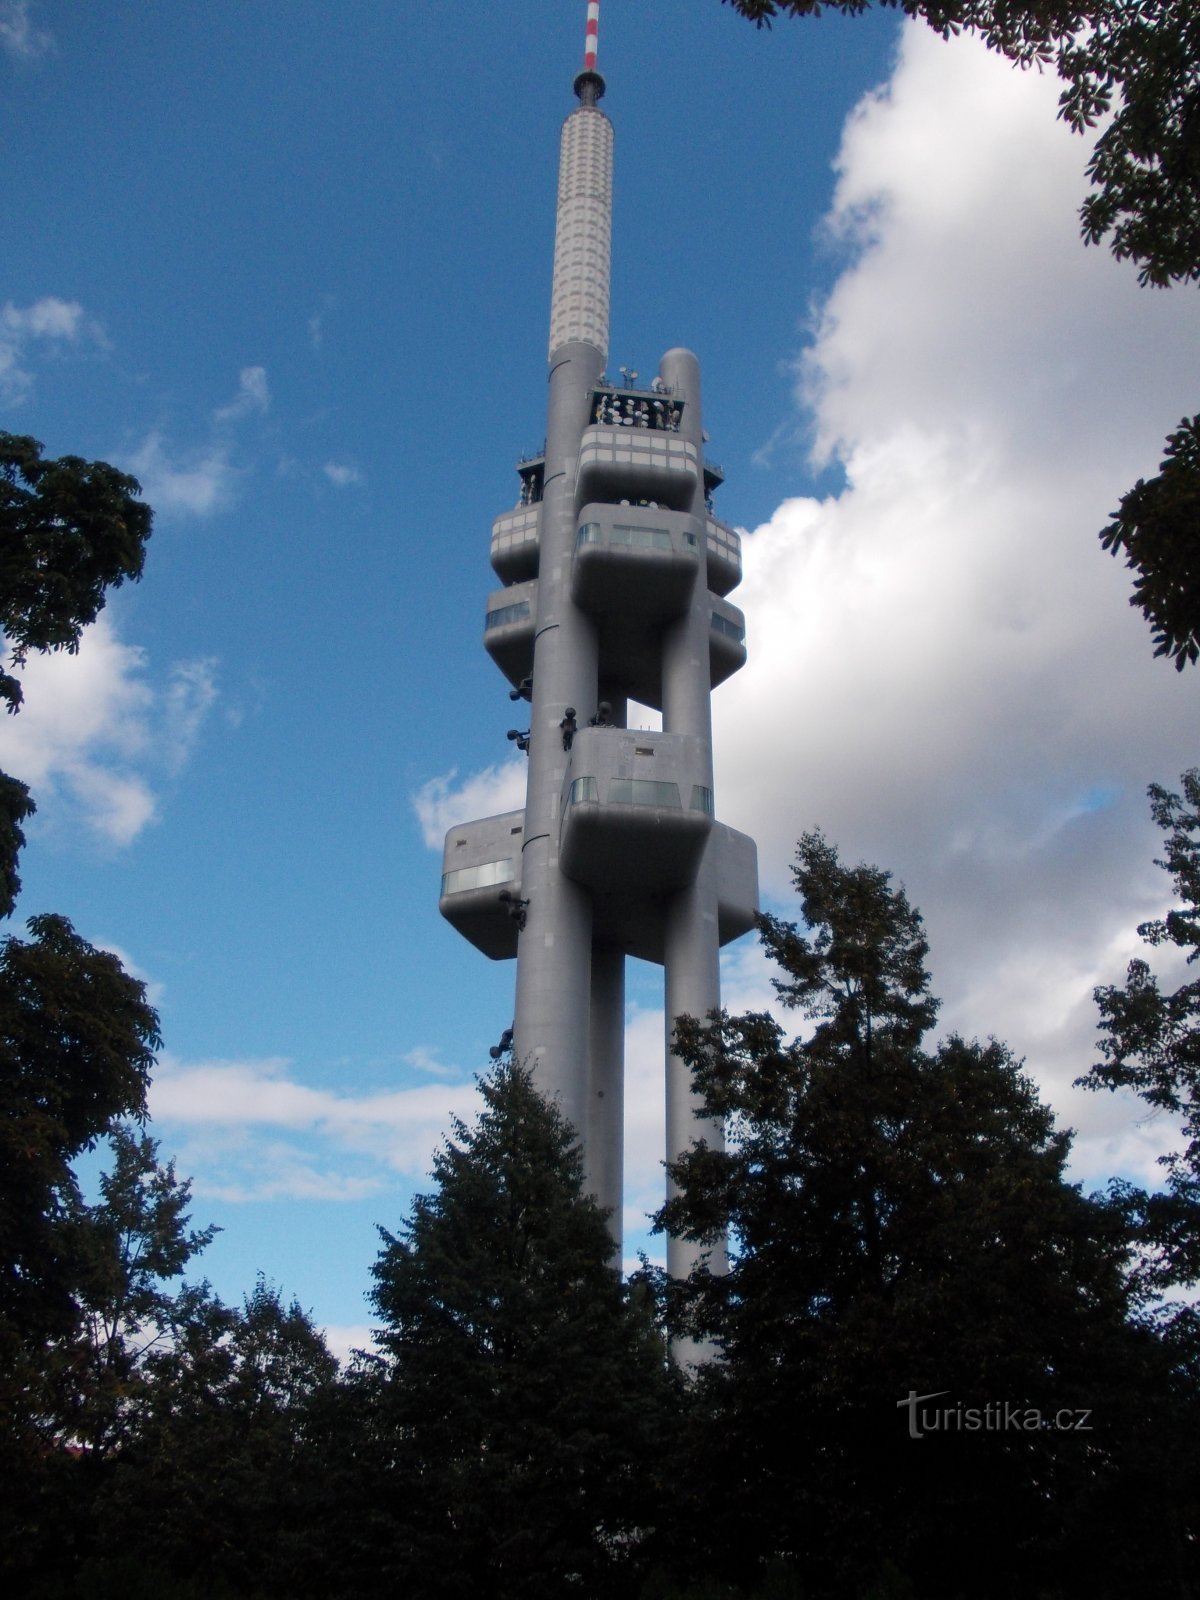 Torre de televisão Žižkov 216 m de altura